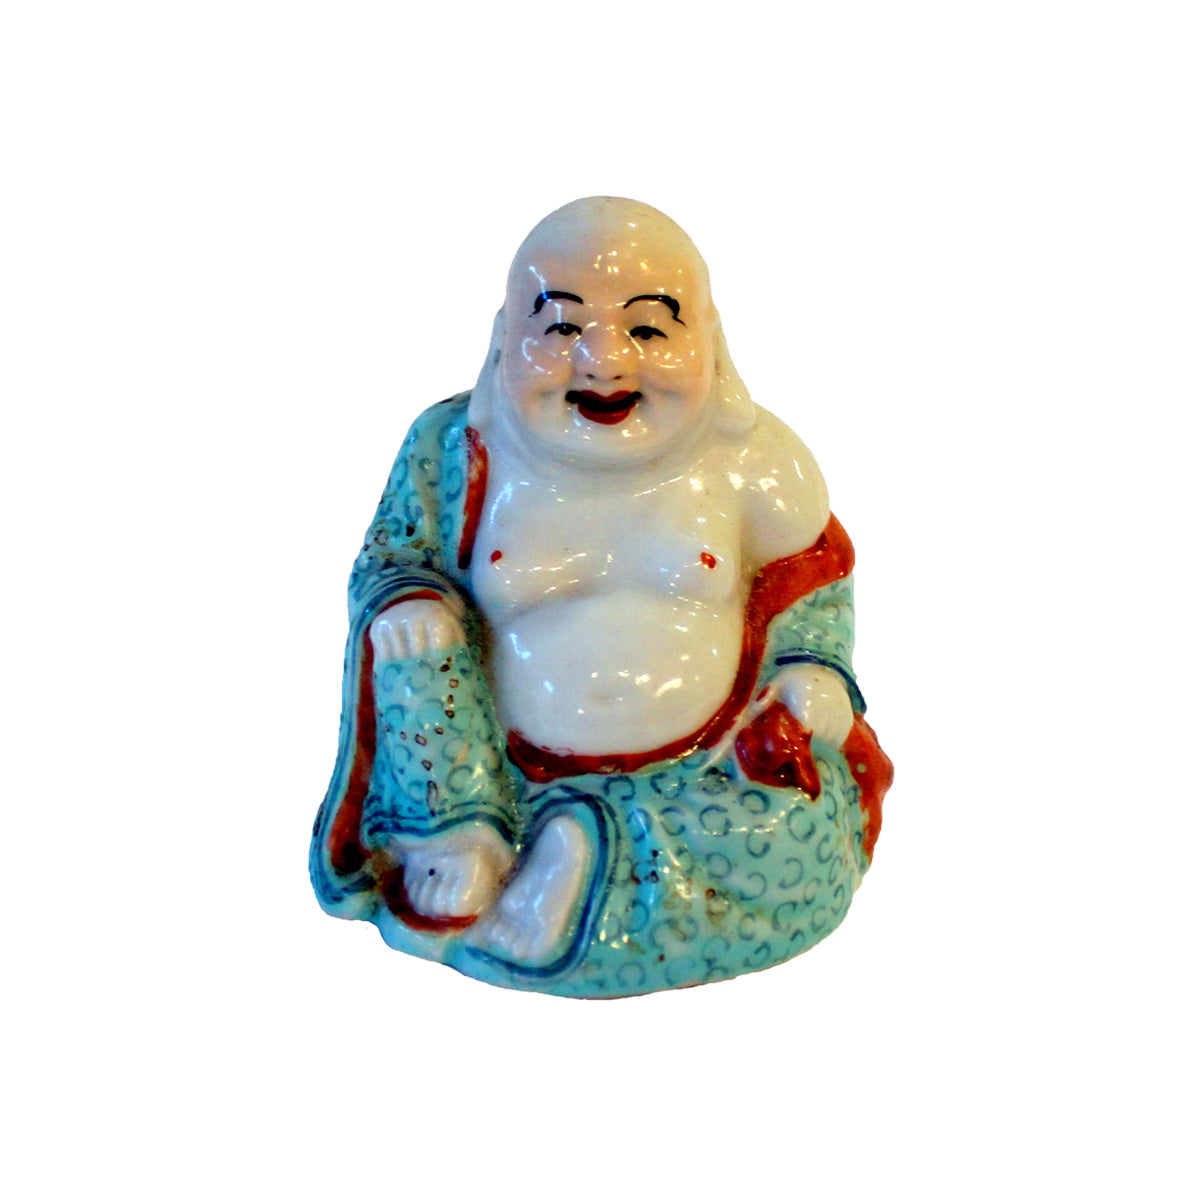 Lille kinesisk figur forestillende Buddha fremstillet ca. 1950